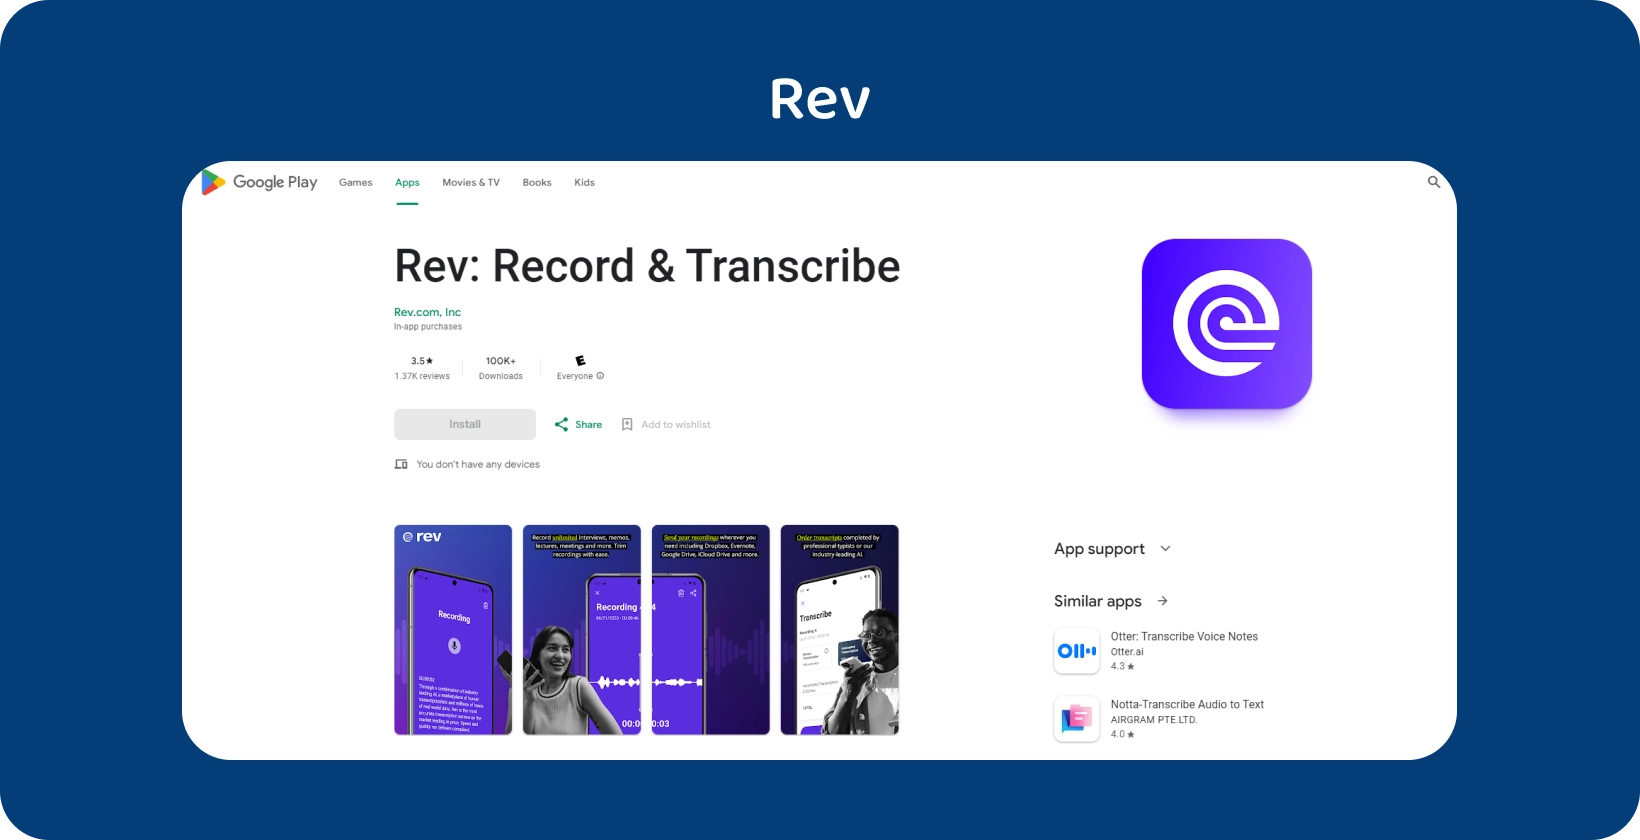 Google Play Store Rev alkalmazás megjelenítése, kiemelve a Android eszközökön történő rögzítés és átírás funkcióit.